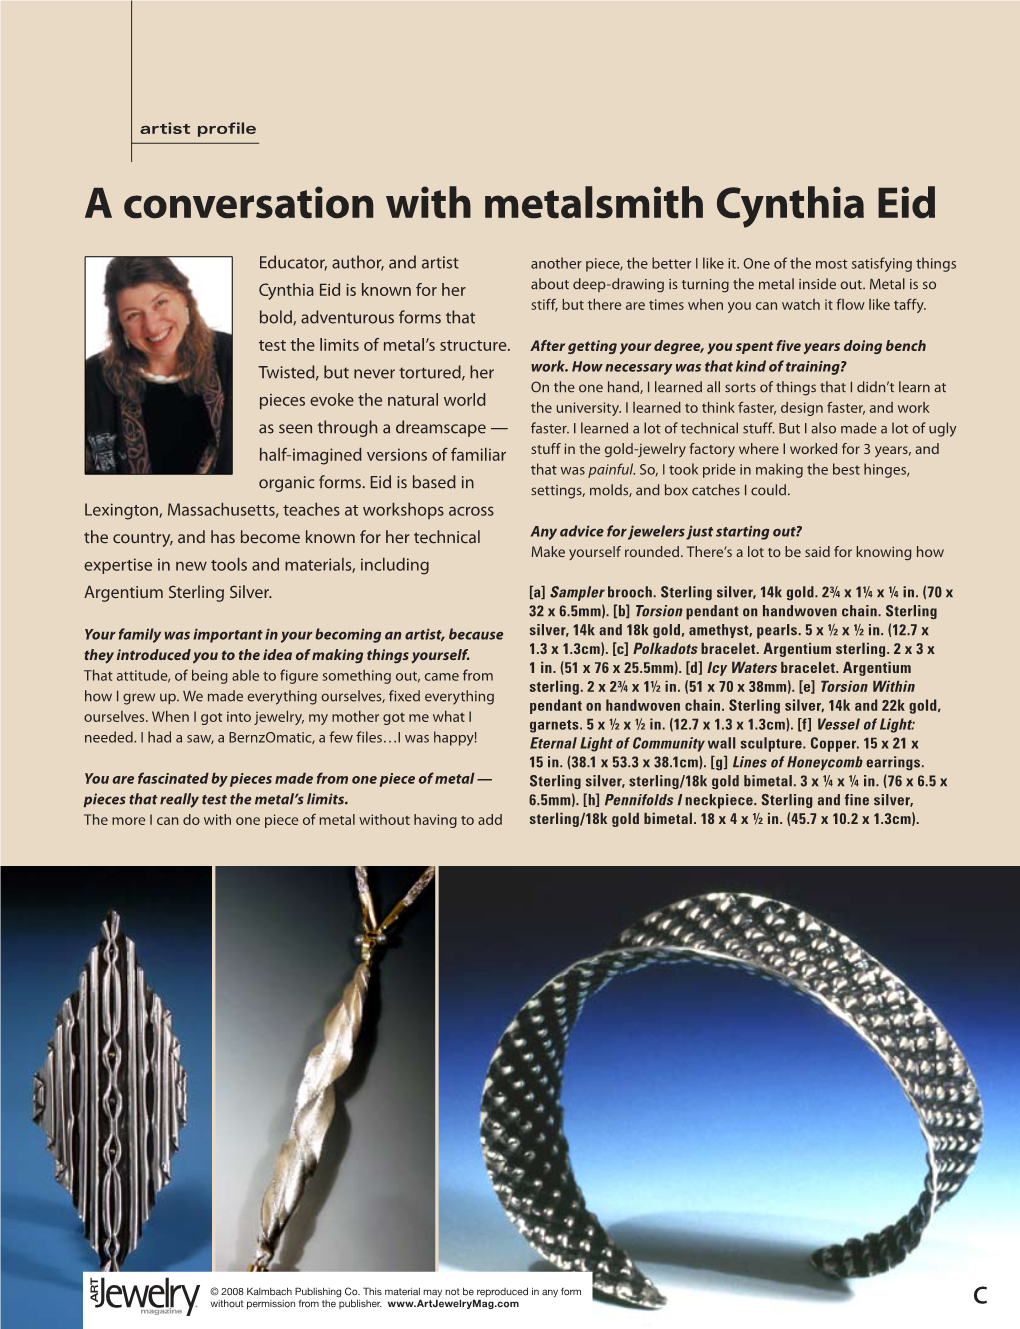 A Conversation with Metalsmith Cynthia Eid